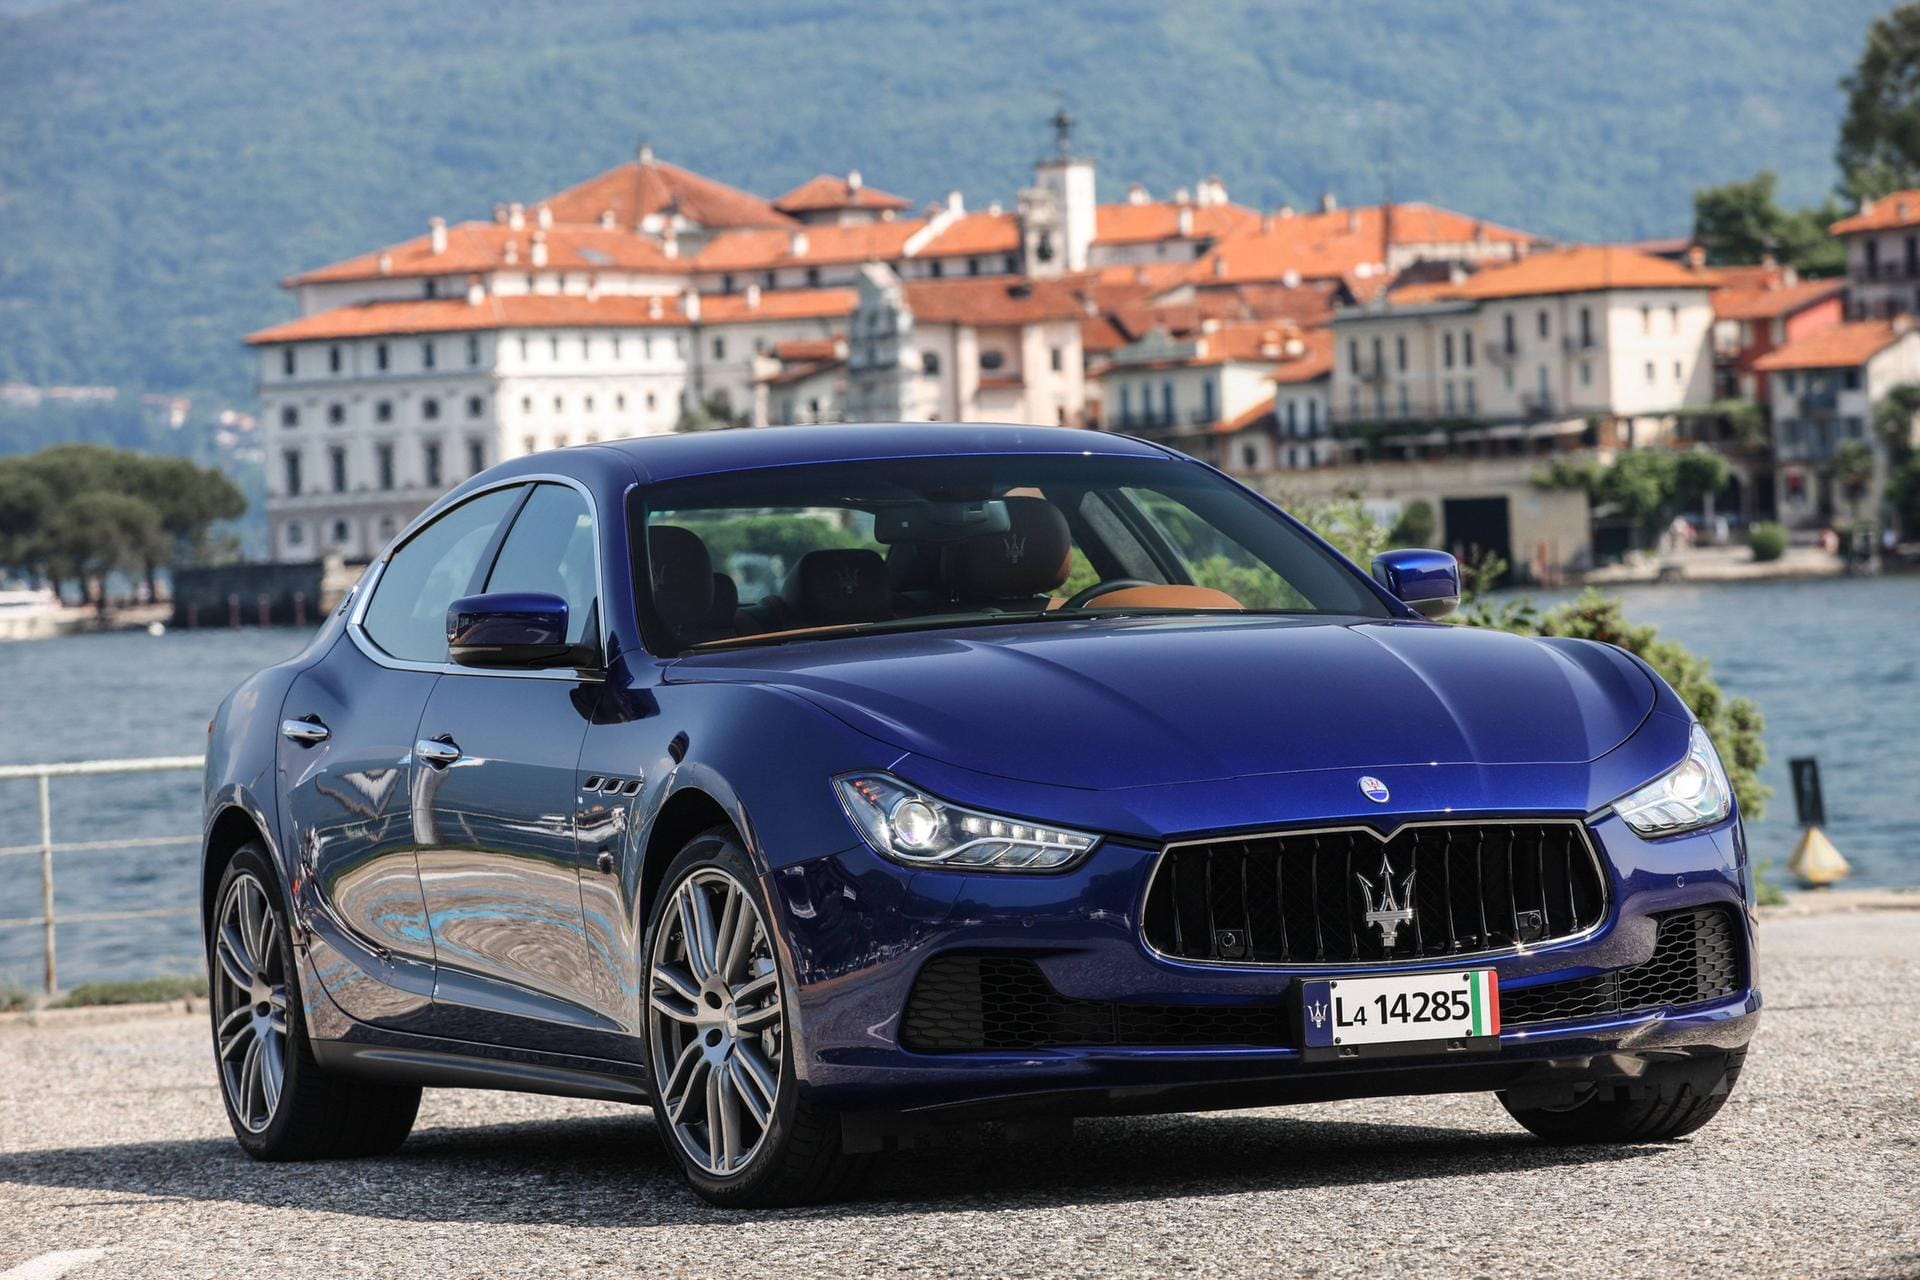 Derzeit der Liebling wohlhabender Großstädter: Der Maserati Ghibli kostet um 75.000 Euro und vermittelt eine Menge James-Bond-ähnliche Coolness.